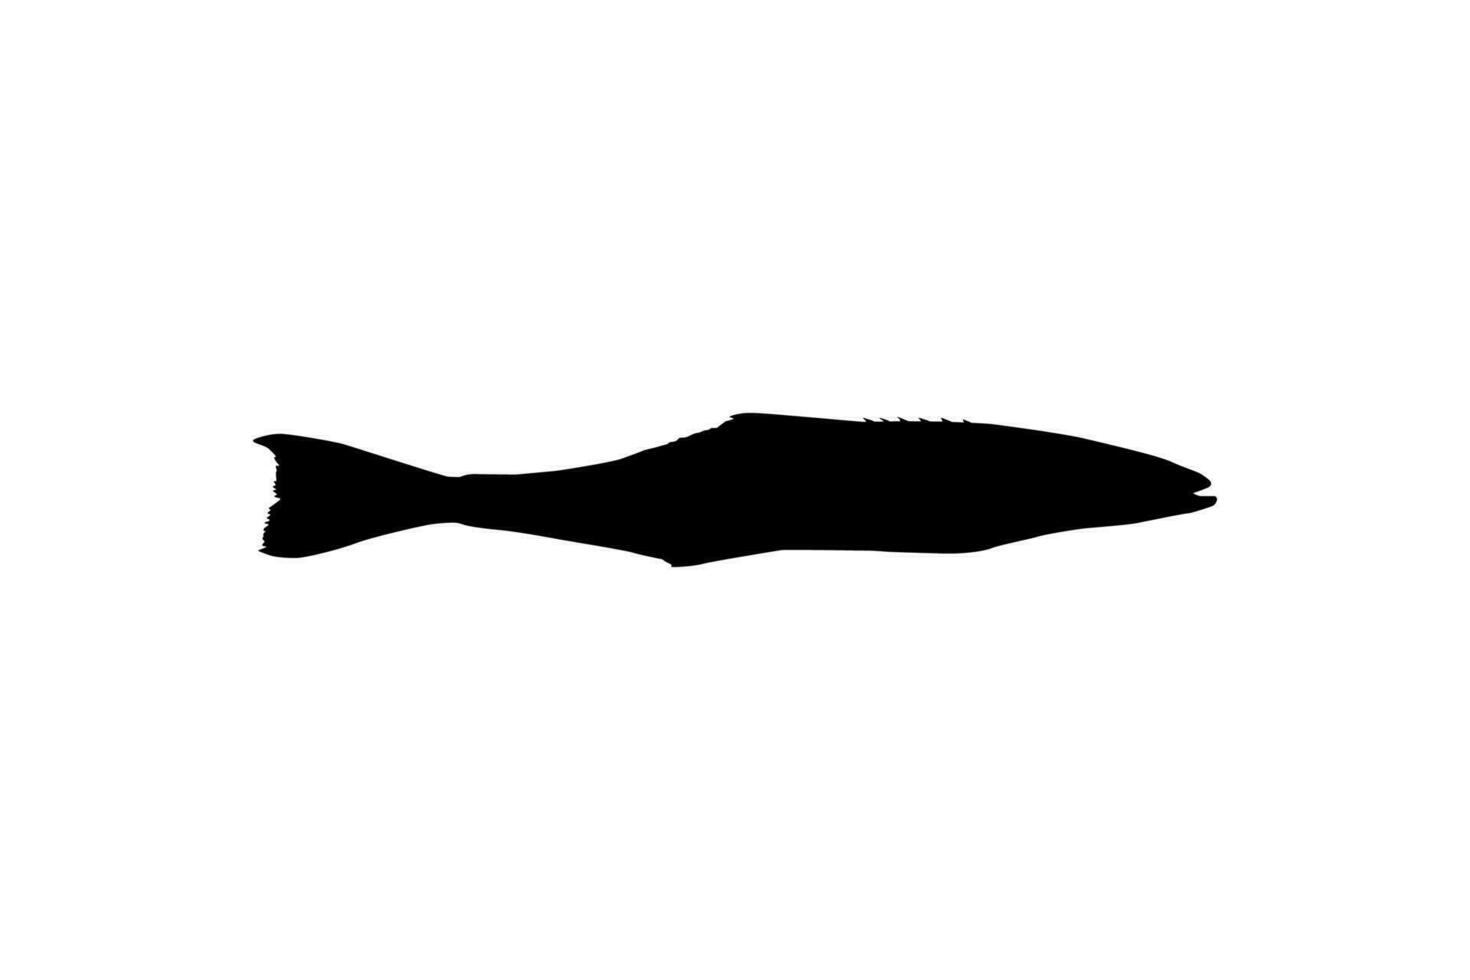 cobia pescado silueta, además conocido como negro pez real, negro salmón, abadejo, pez limón, cangrejero, pródigo hijo, bacalao, y negro bonito. vector ilustración